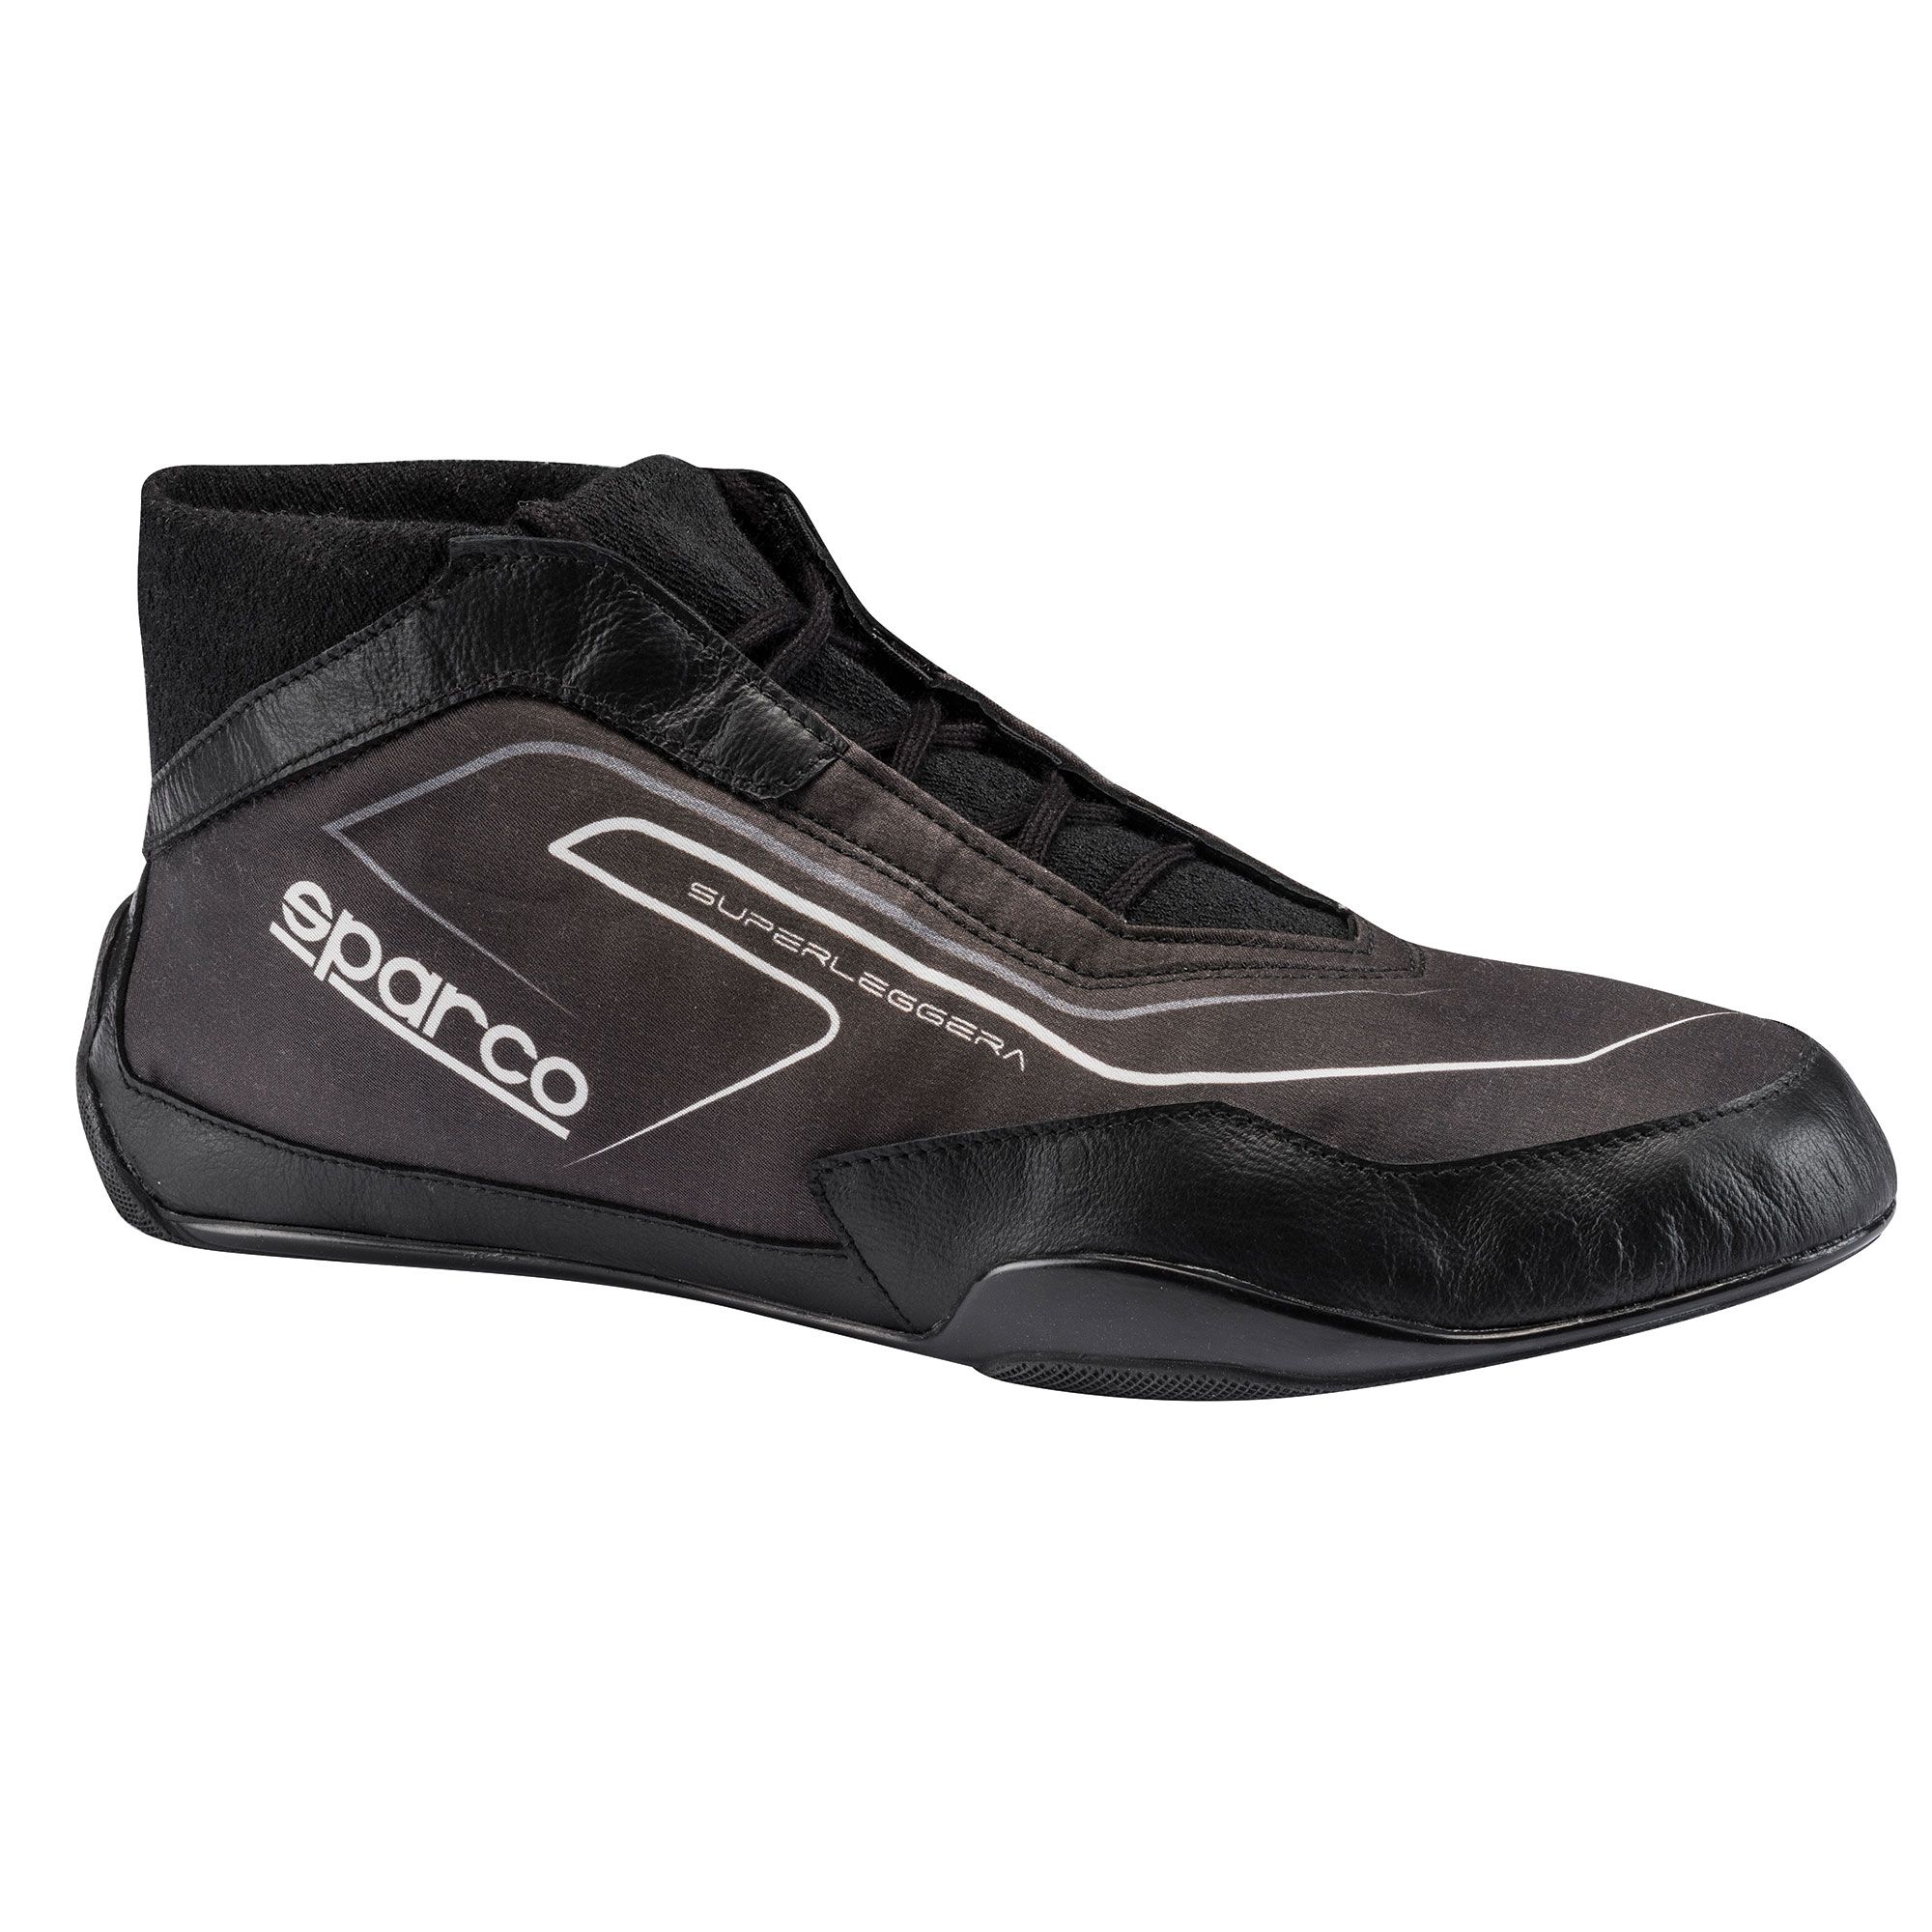 motorsport racing shoes